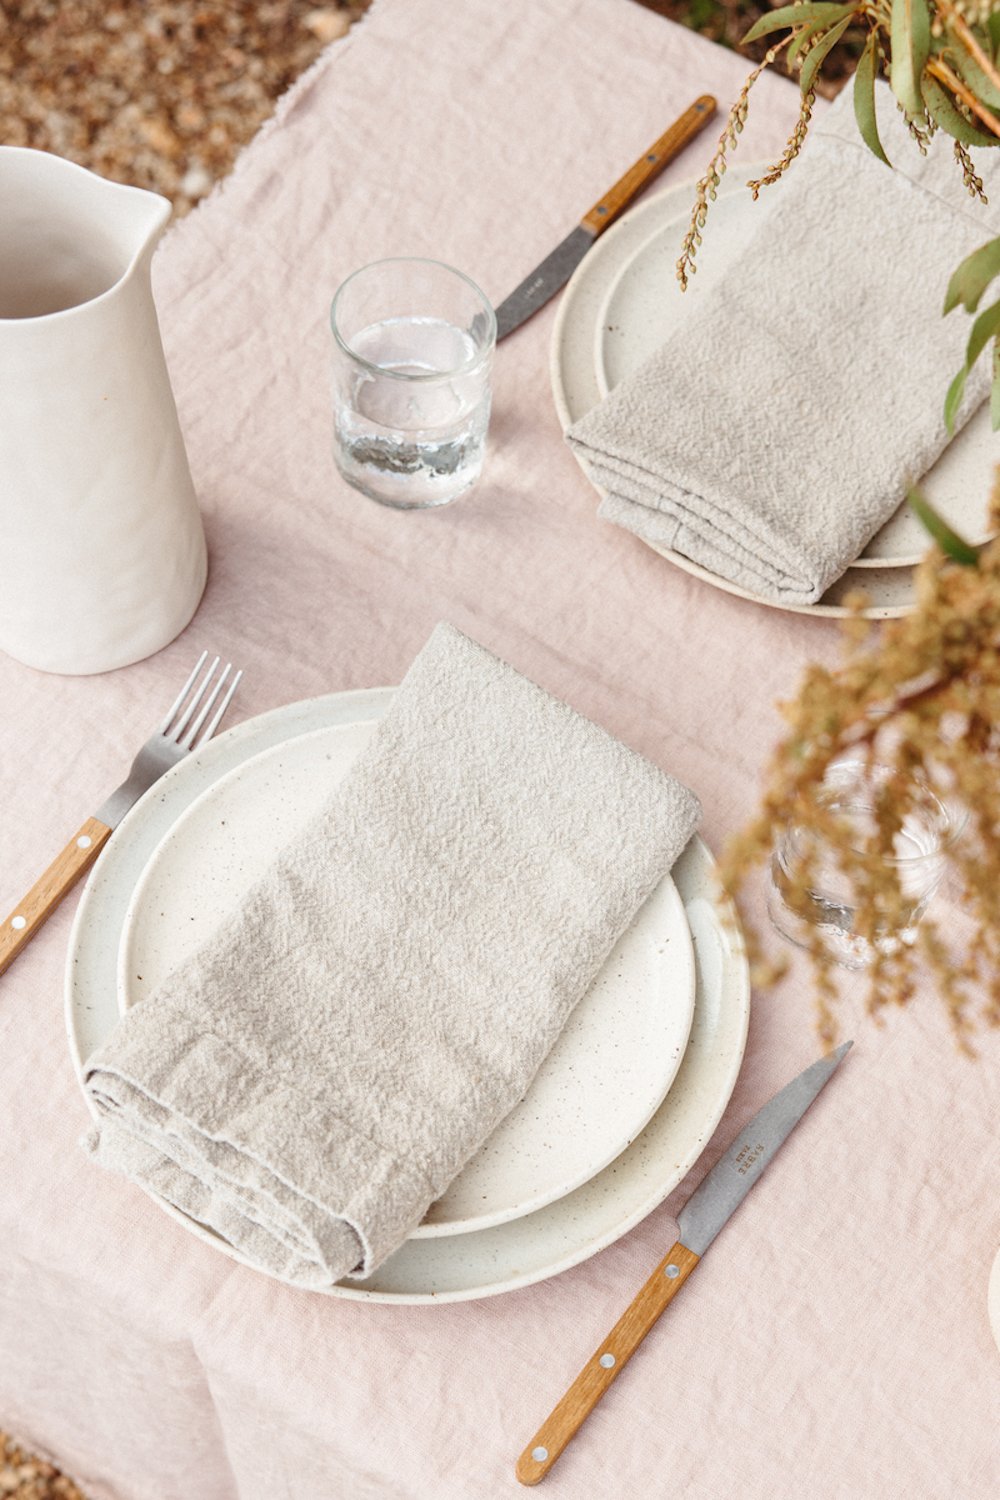 چیدمان میز ساده روی رومیزی کتان صورتی با دو بشقاب سفید، دستمال سفره کتان خاکستری، چنگال و چاقو.